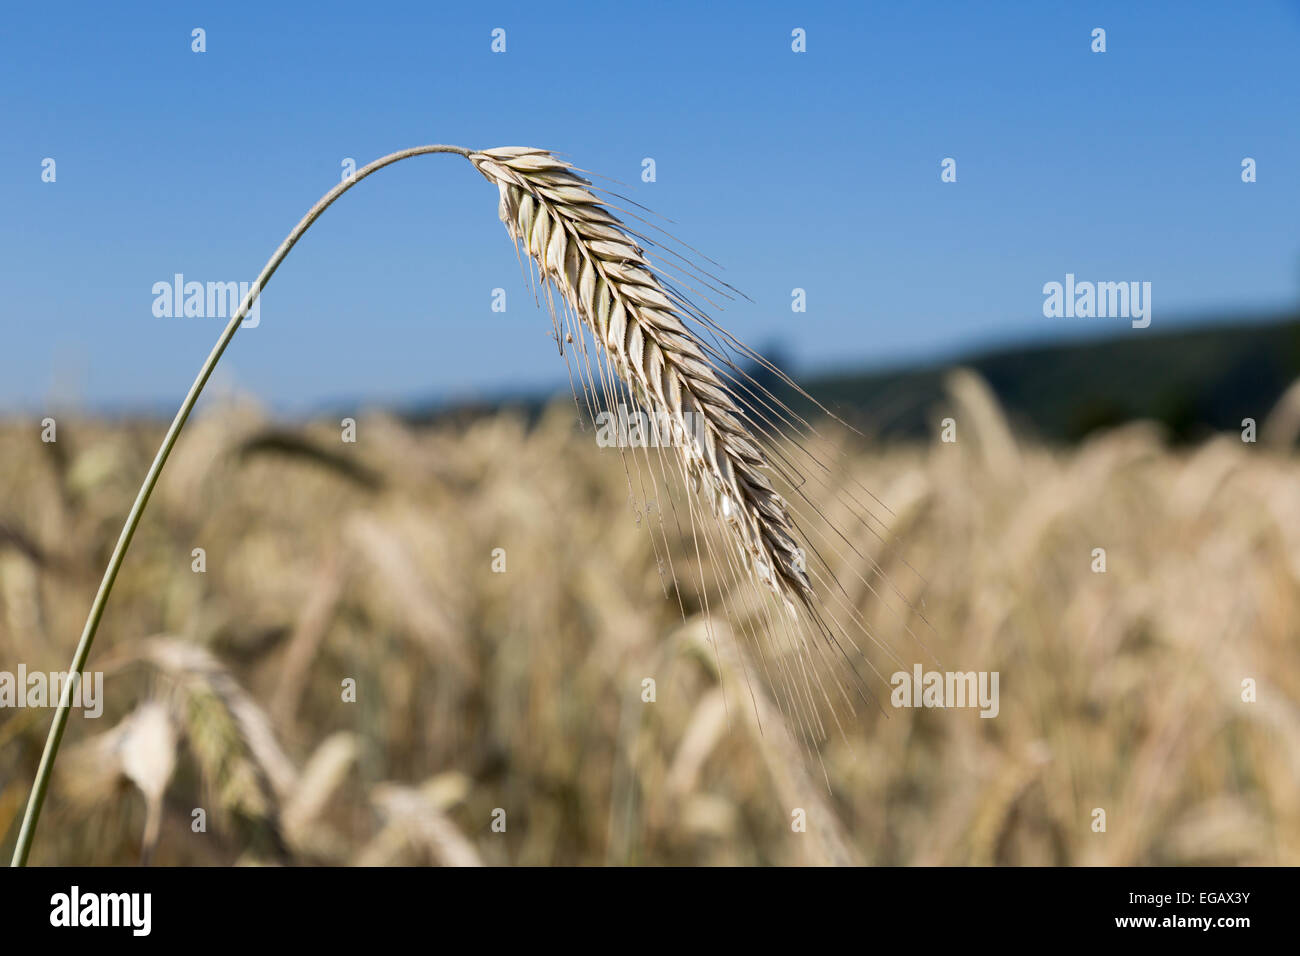 Ripe barley Hordeum vulgare crop in field, Wertheim, Germany Stock Photo